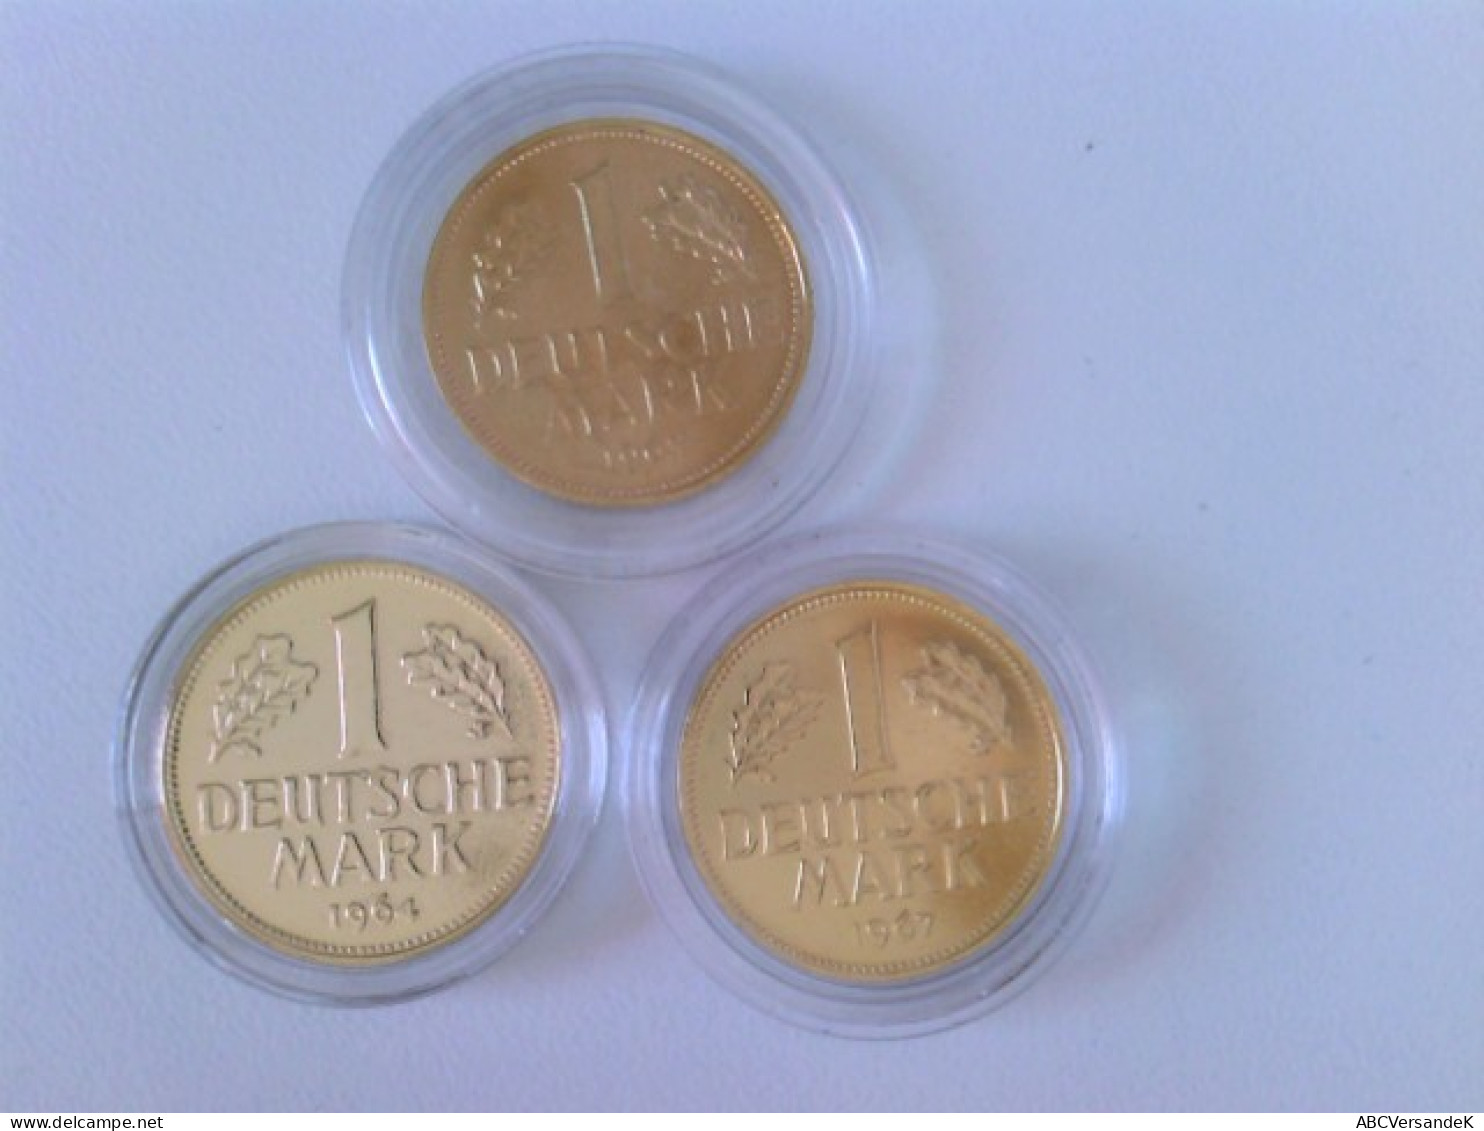 Münzen/ Medaillen: Hier 2 X 1 DM 1950 + 1955, Deutsche Mark Mit 24 Karat Goldauflage, In Kapsel. - Numismatics